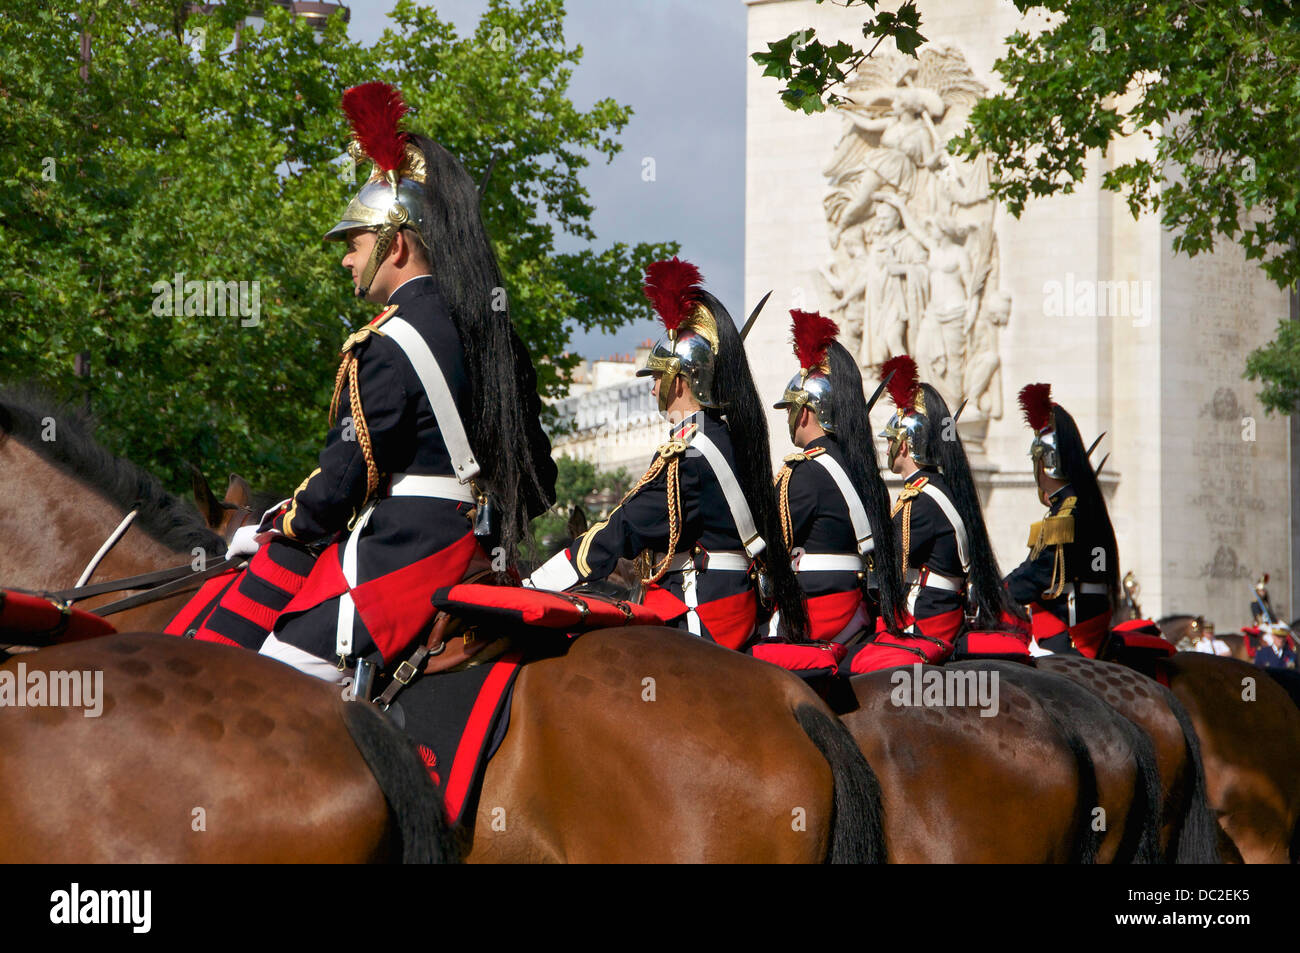 Elementos del regimiento de caballería de los franceses "Garde Républicaine". En el fondo, el detalle del Arco del Triunfo de l'Etoile, C Foto de stock